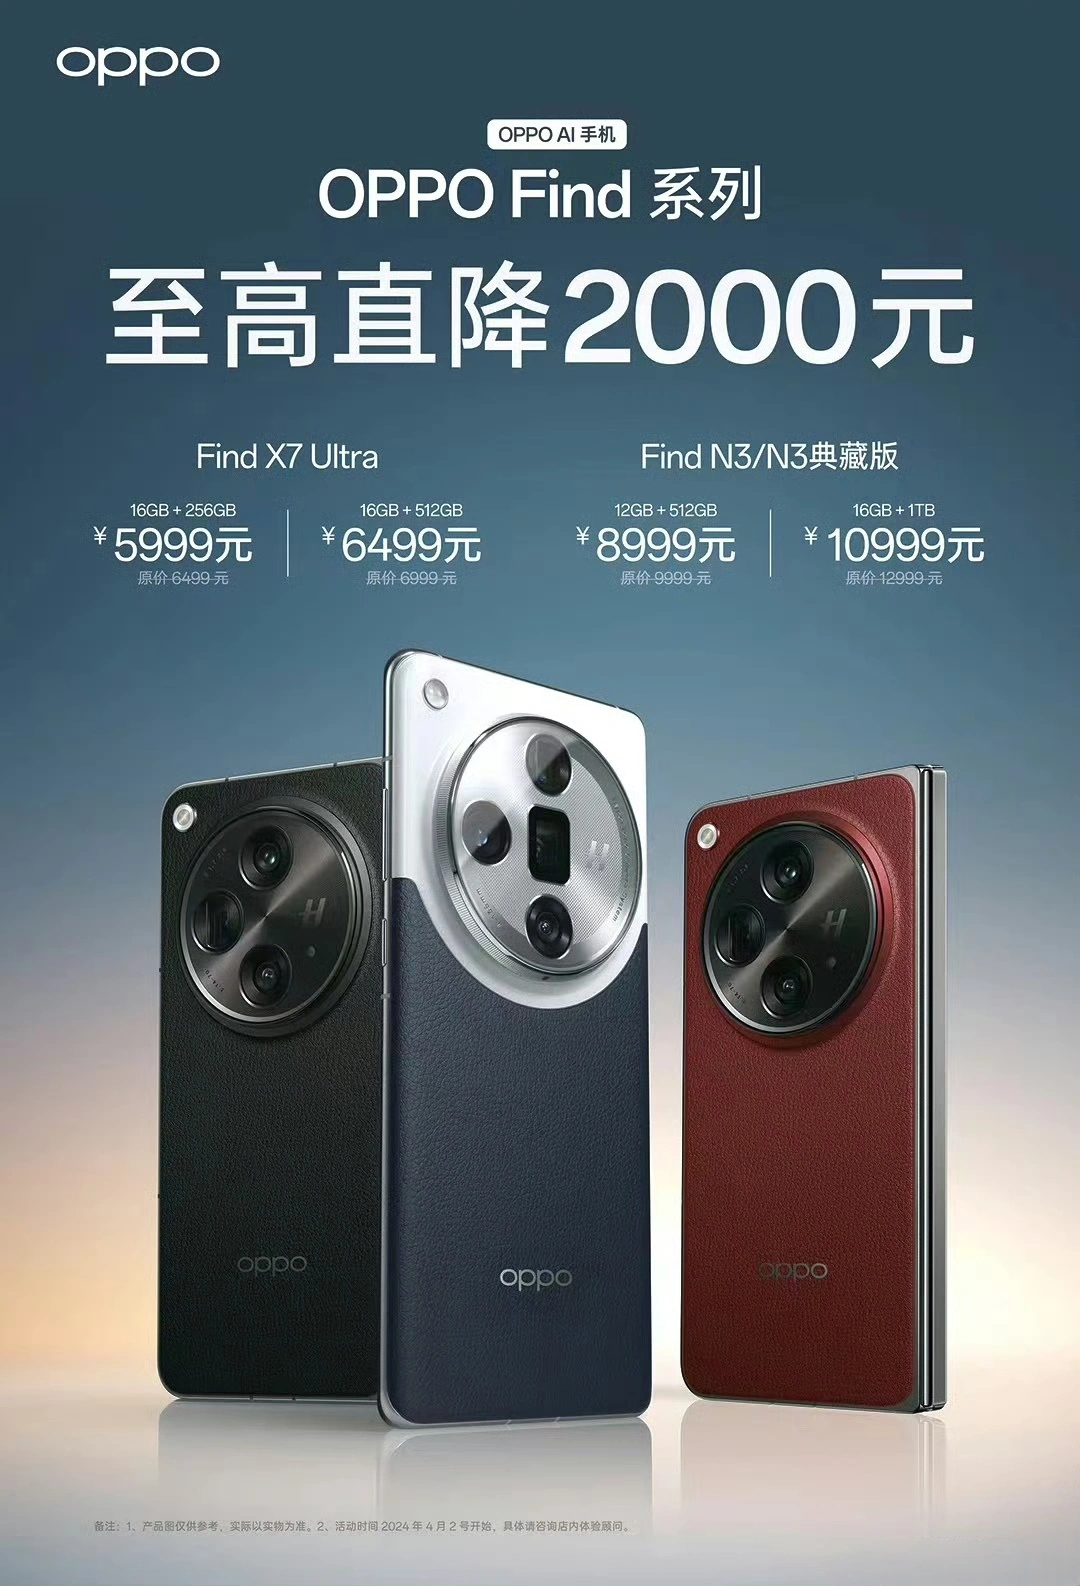 OPPO Find 系列手机官方降价：X7 Ultra 直降最高 500 元、N3 直降最高 2000 元